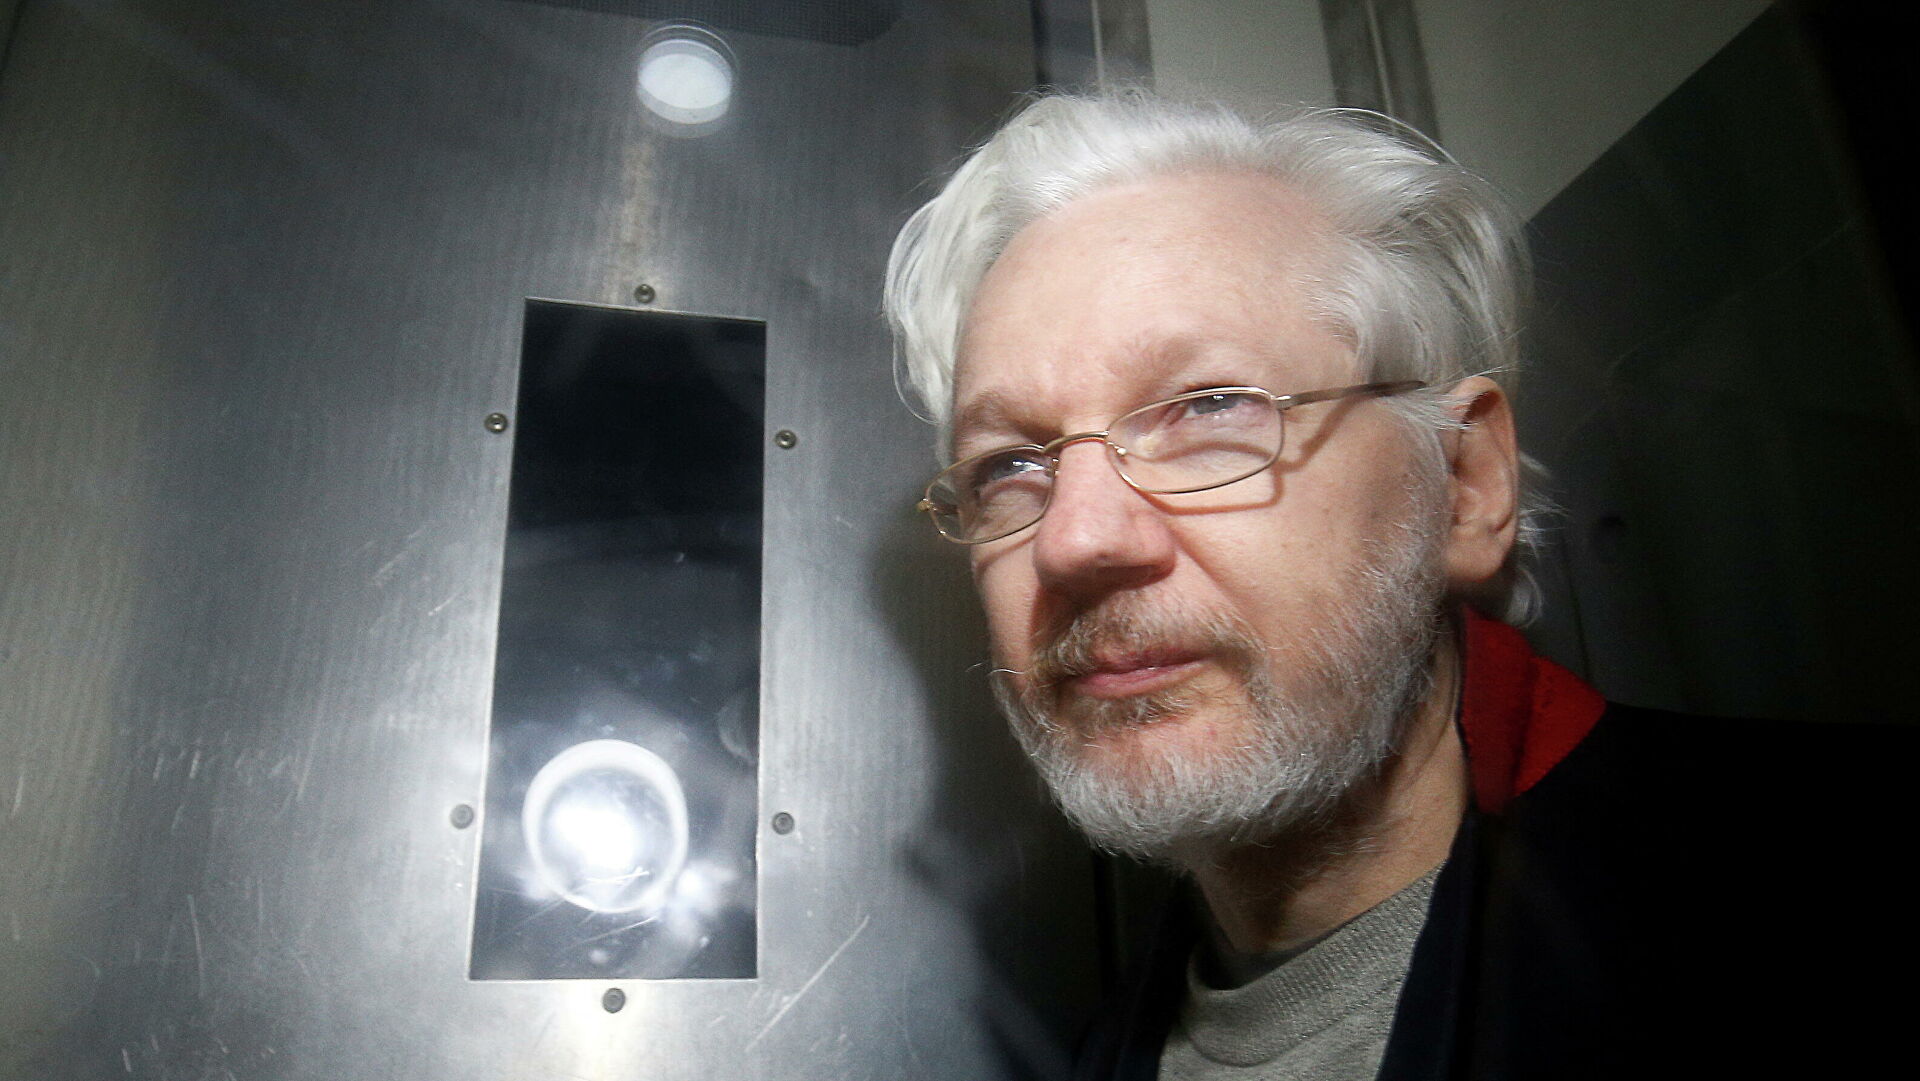 El fundador de Wikileaks está punto de ser extraditado a EEUU donde podría recibir condena de 175 años